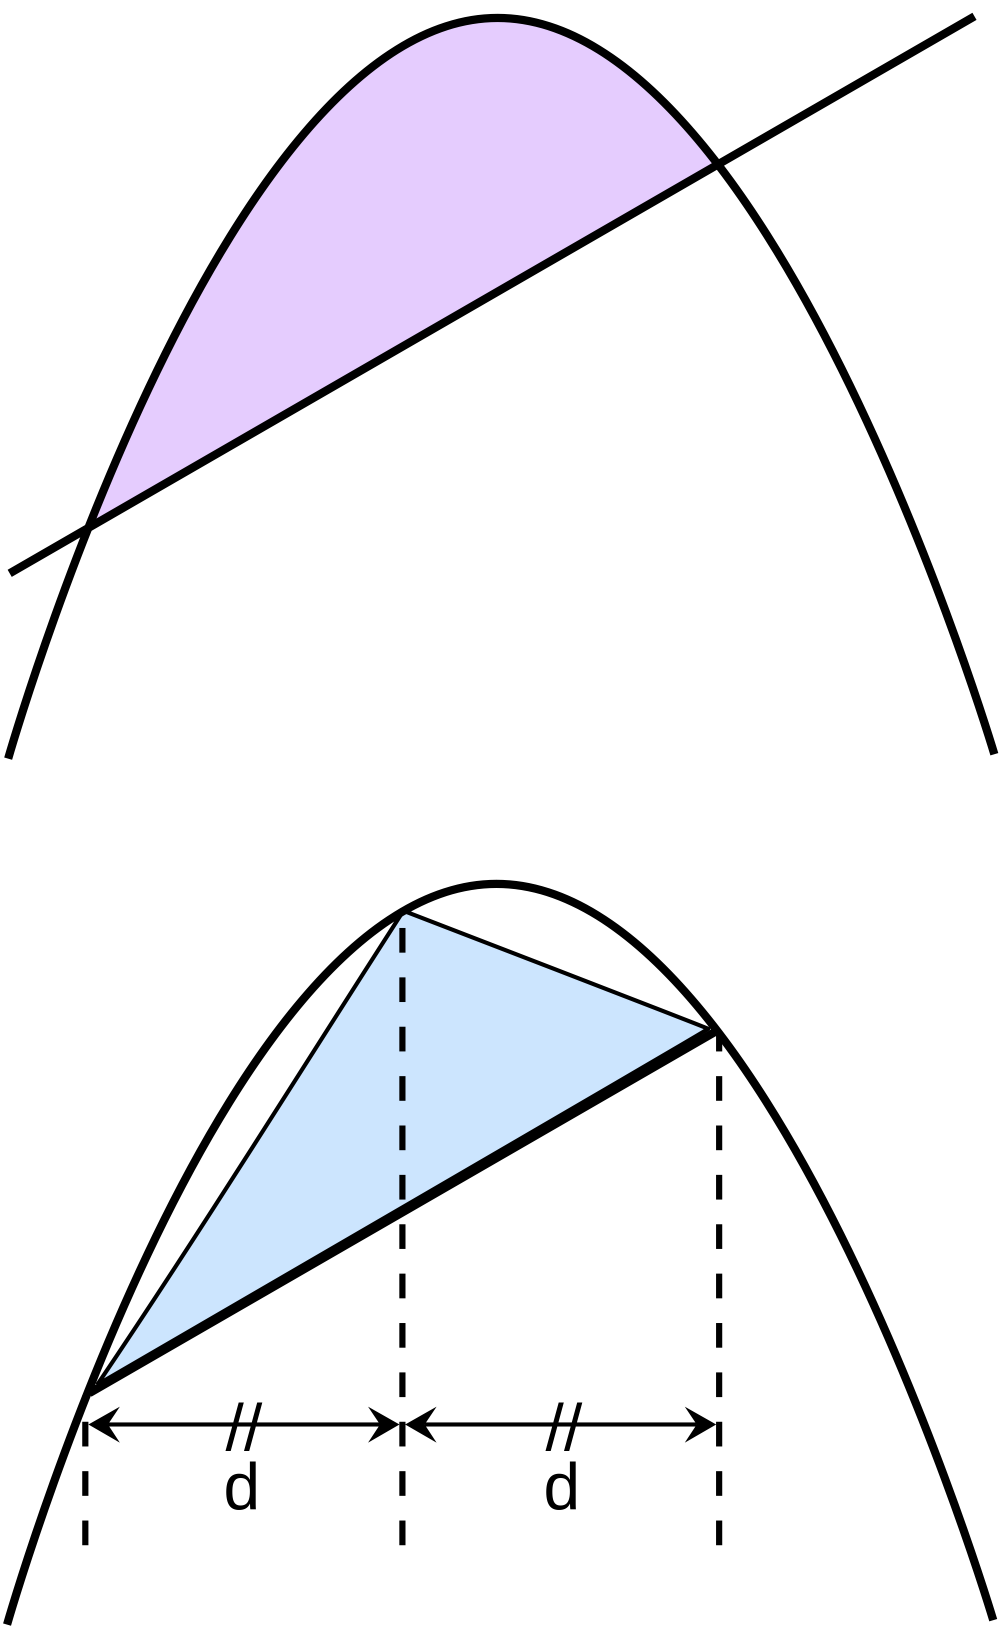 Arquímedes demostró que el área del segmento parabólico de la figura superior es igual a 4/3 de la del triángulo inscrito de la figura inferior.